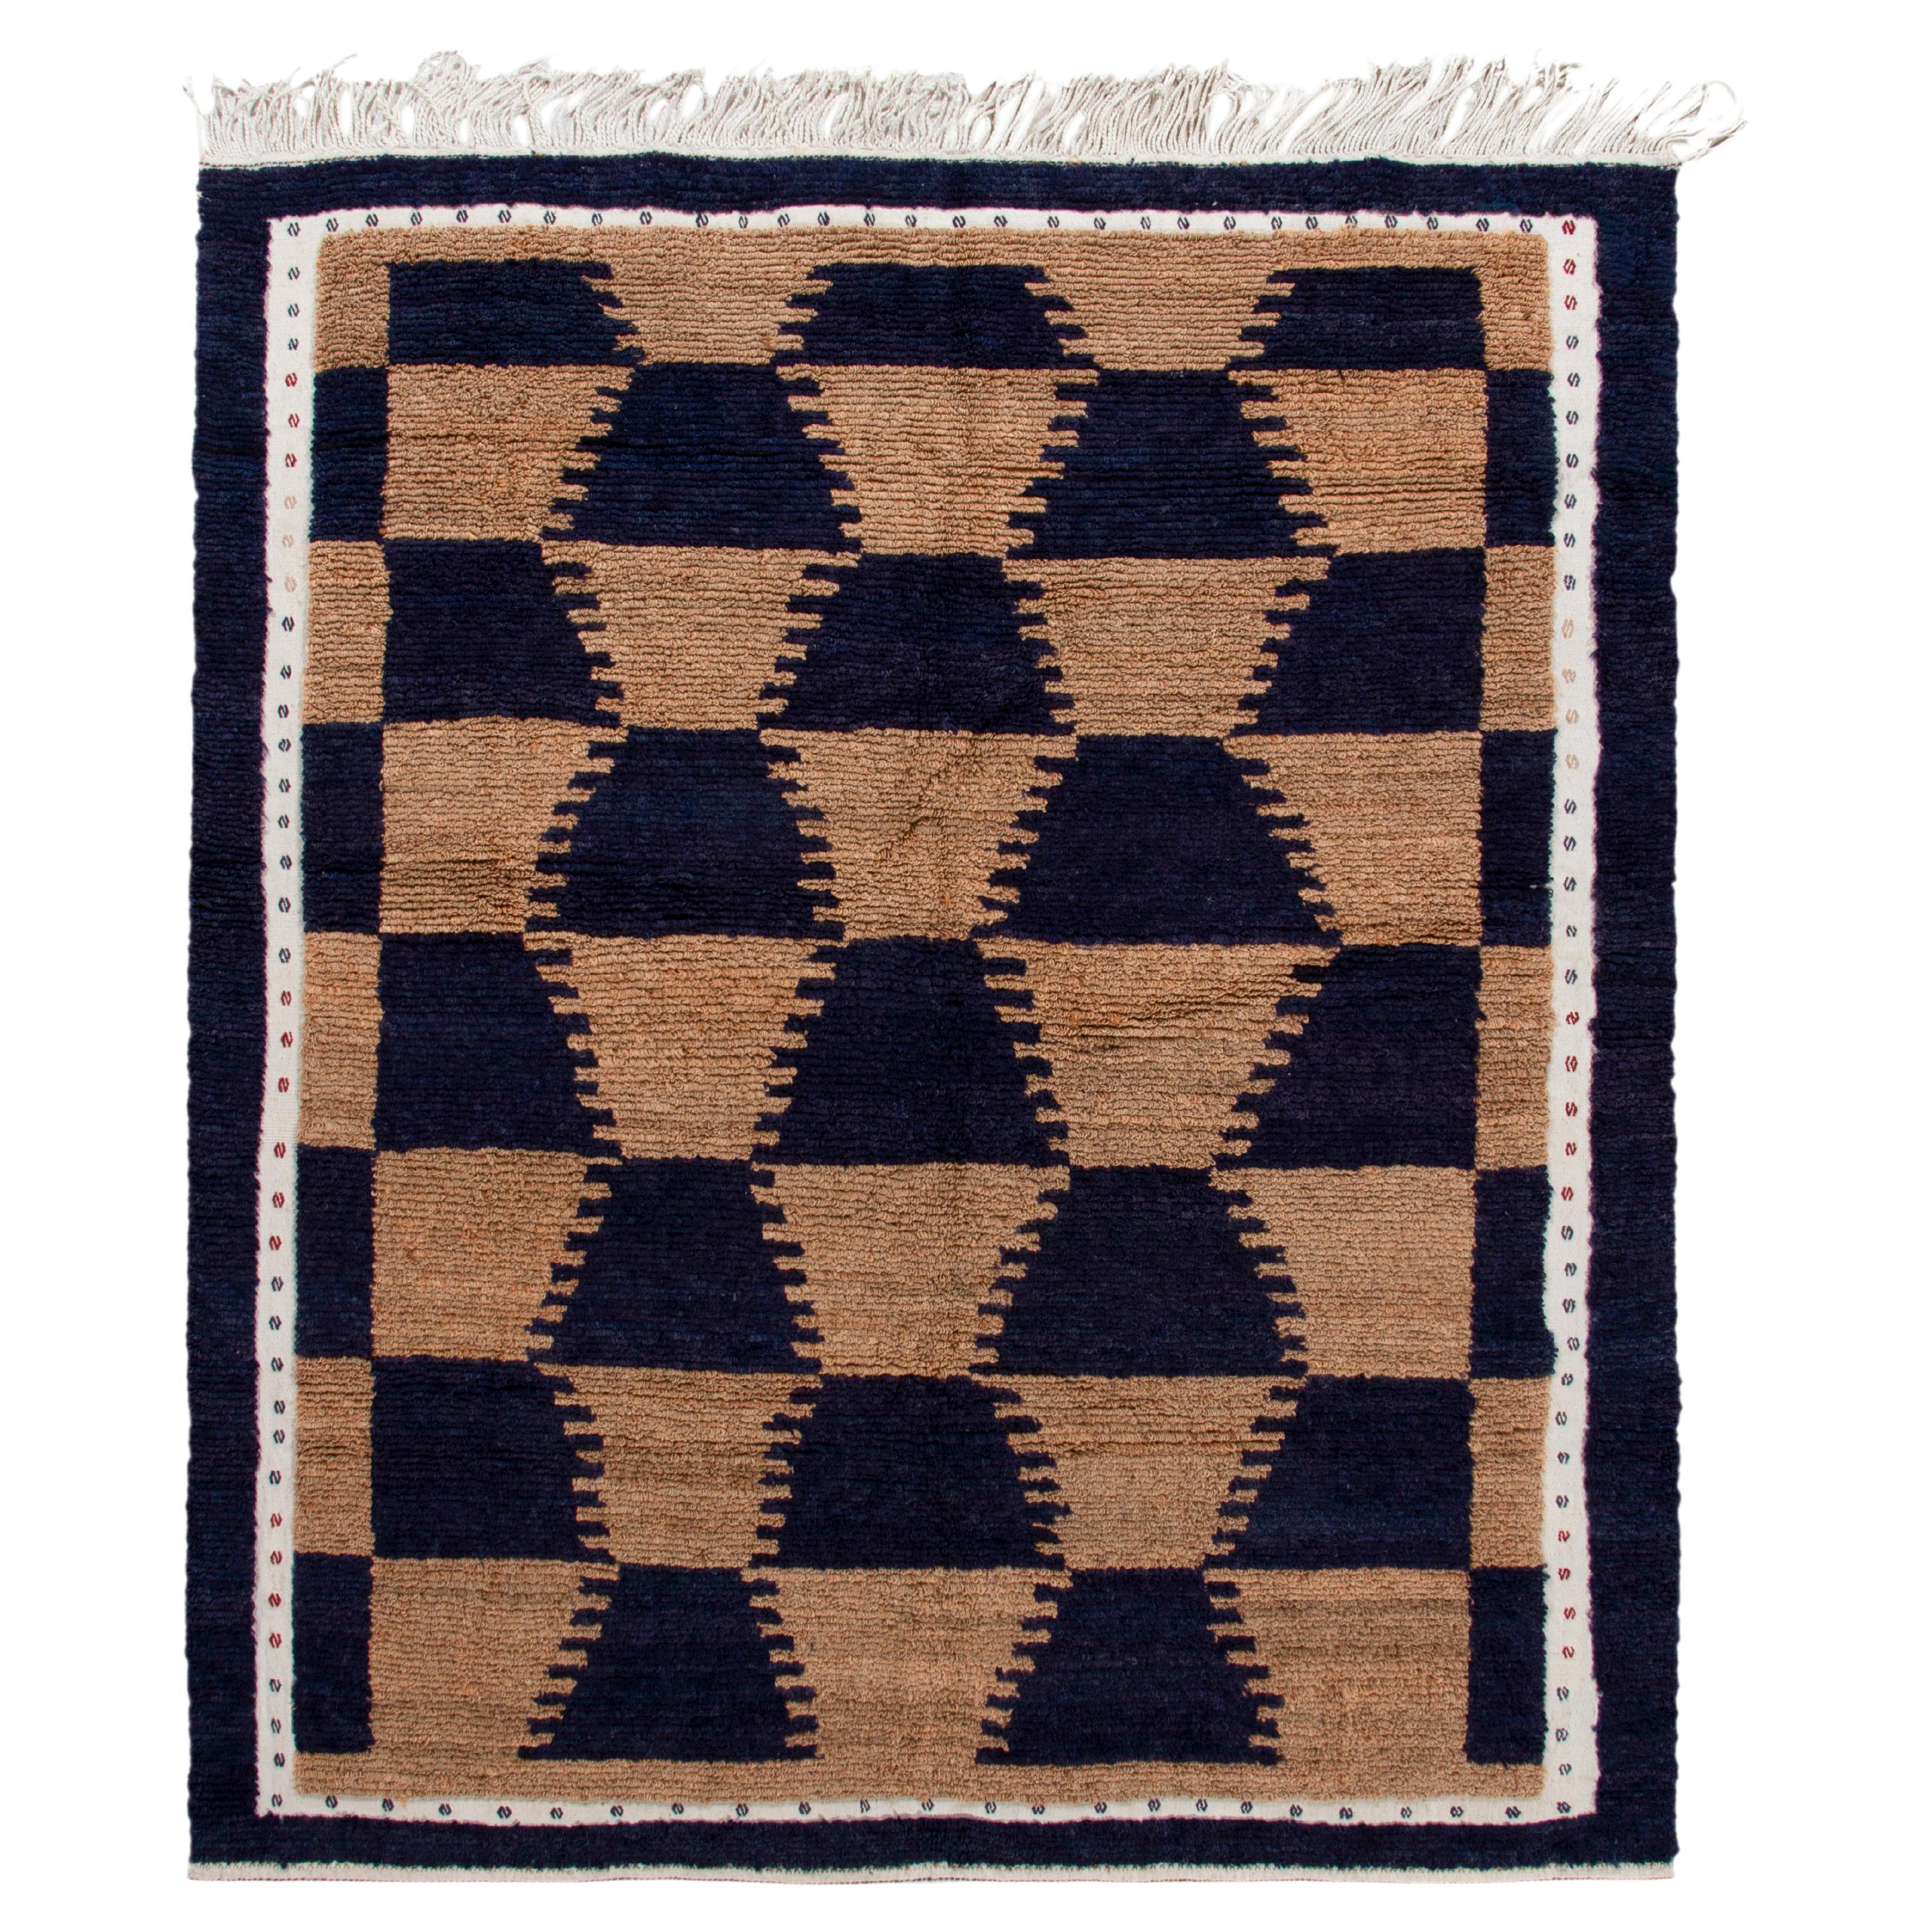 Vintage Tulu Teppich in Braun, Tiefblau & Weiß mit geometrischem Muster von Teppich & Kelim